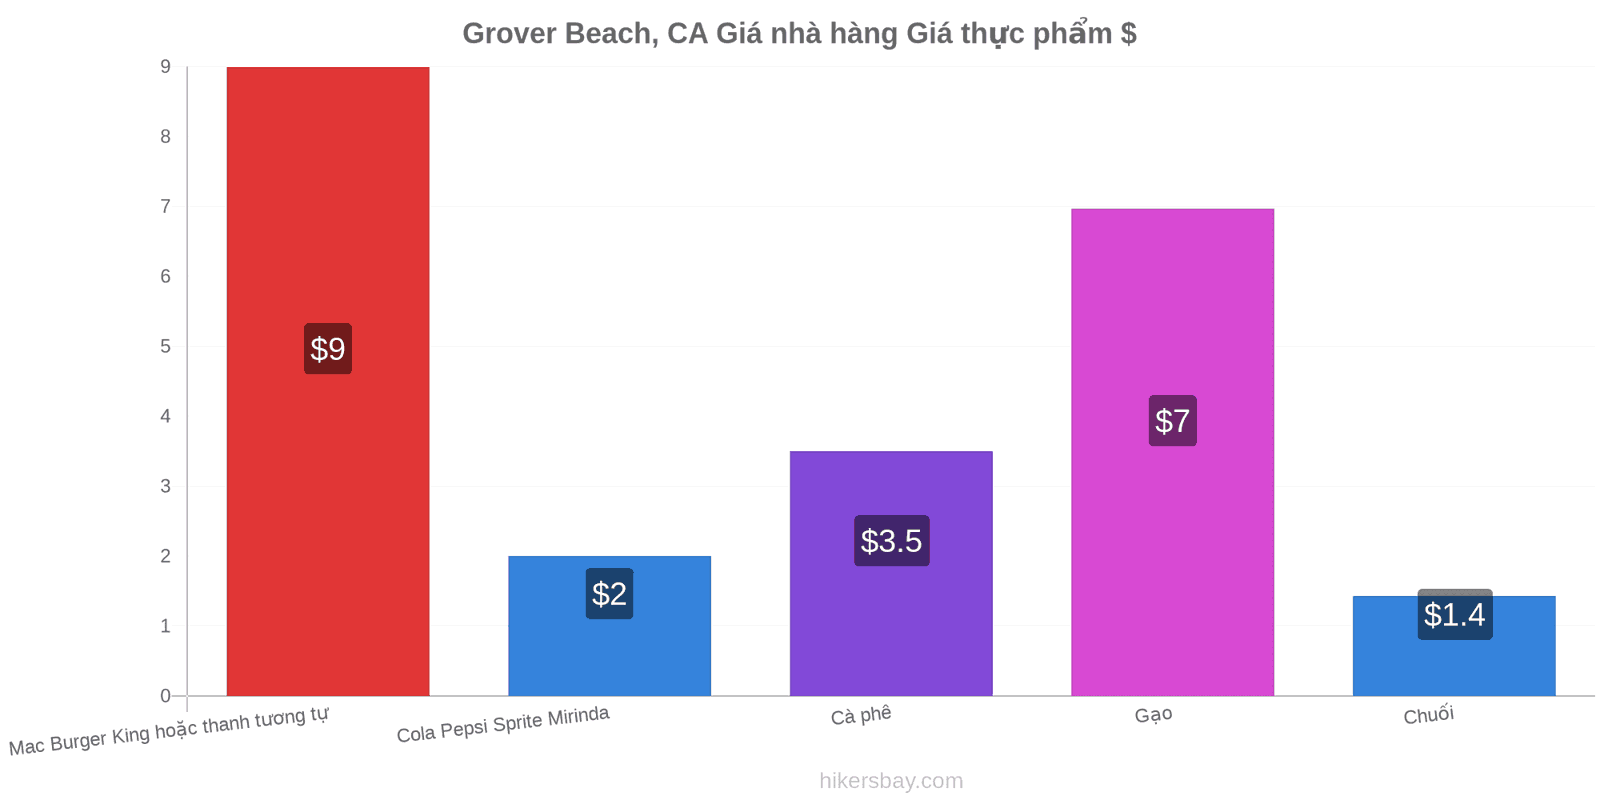 Grover Beach, CA thay đổi giá cả hikersbay.com